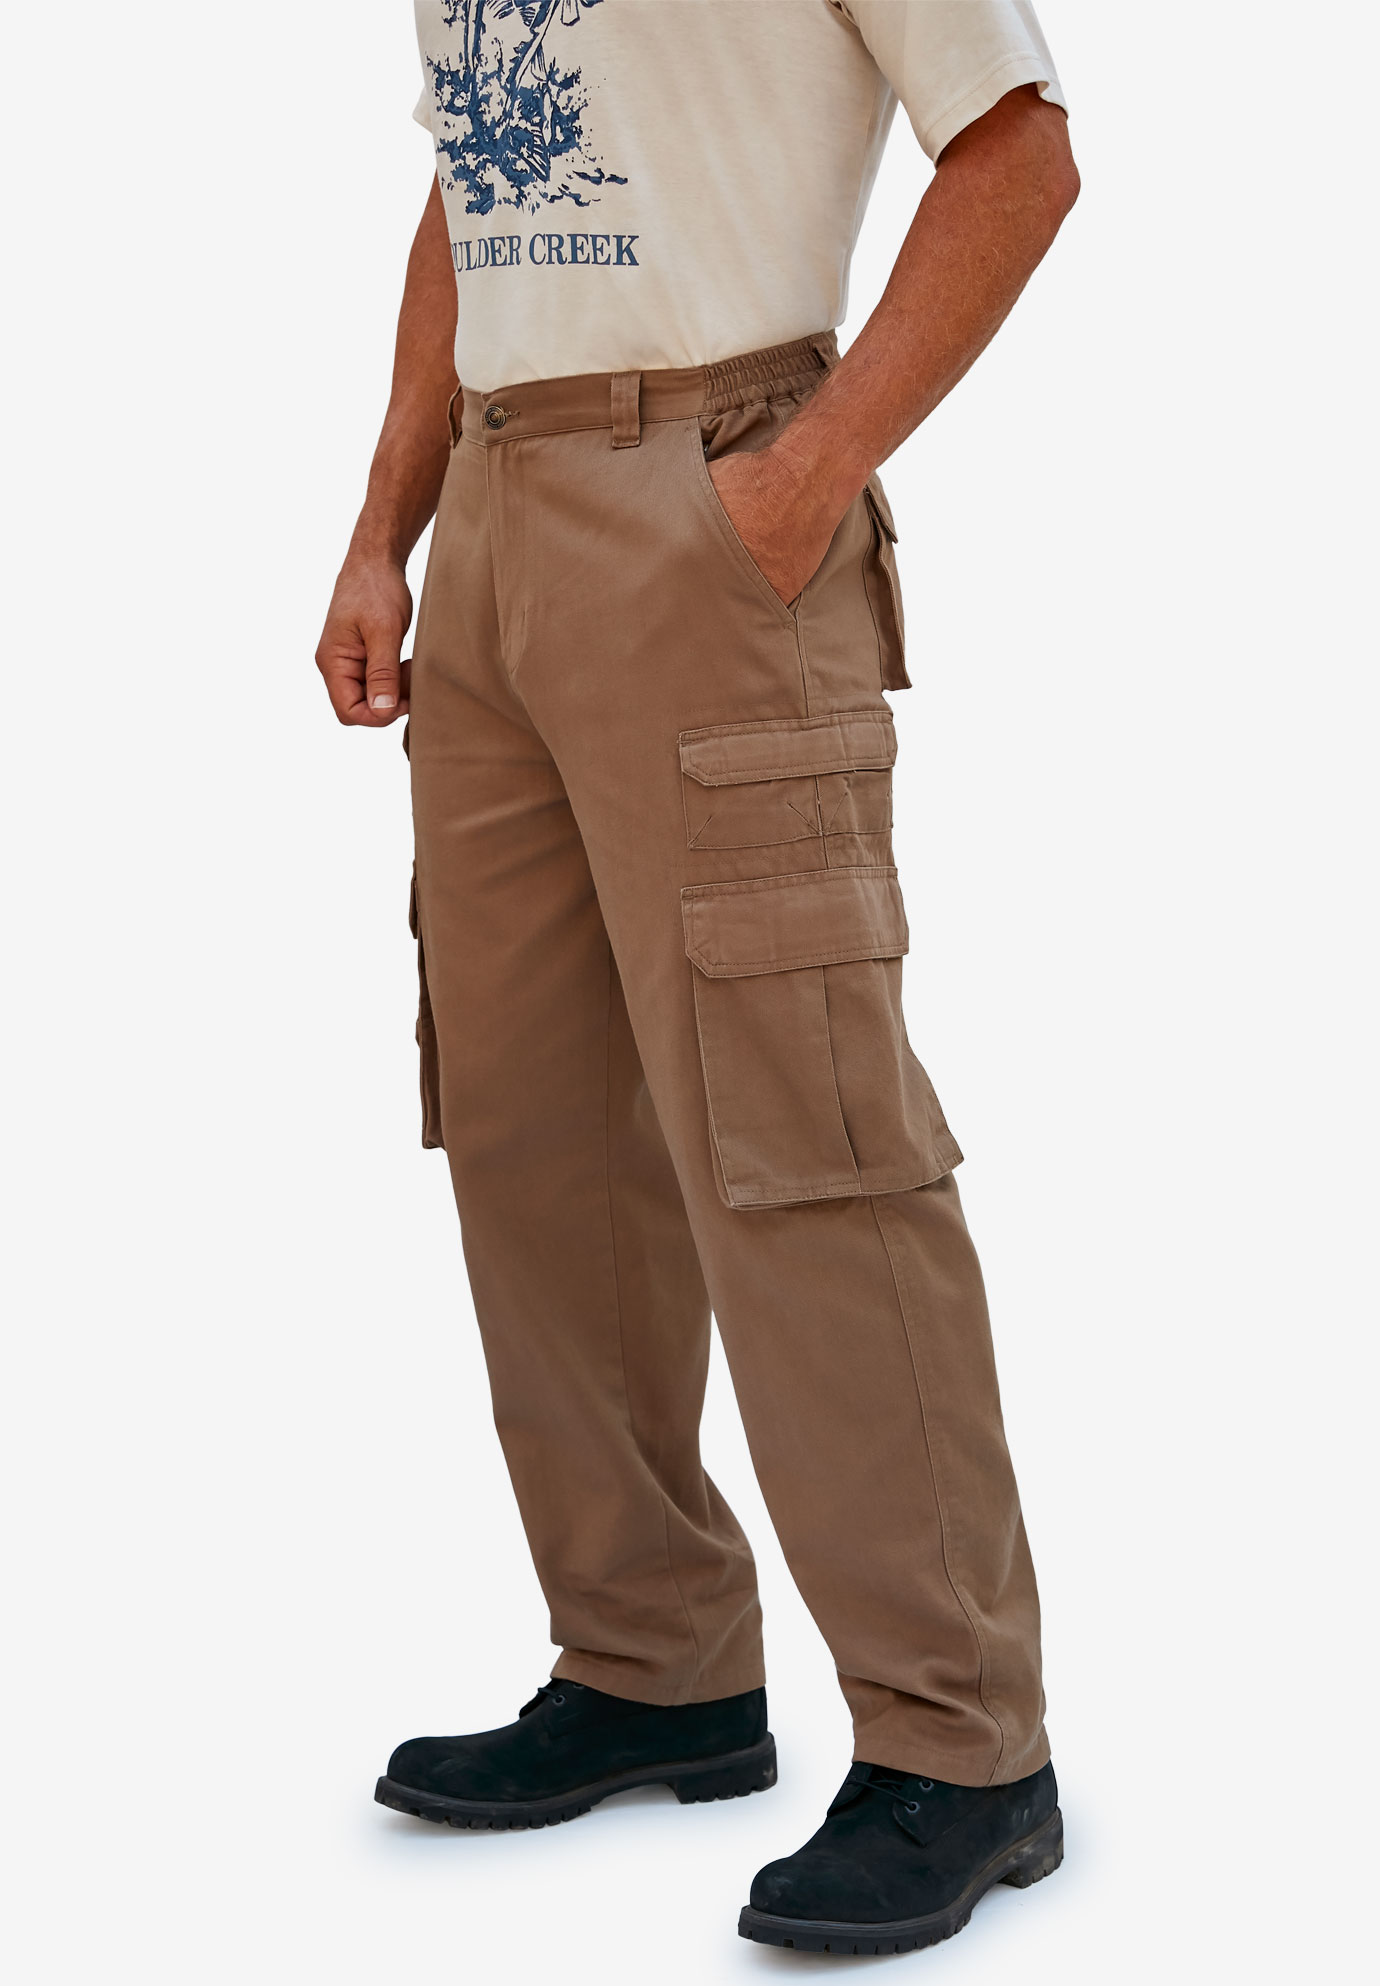 Boulder Creek By Kingsize Men's Big & Tall  Side-Elastic Stacked Cargo Pocket Pants - image 4 of 6